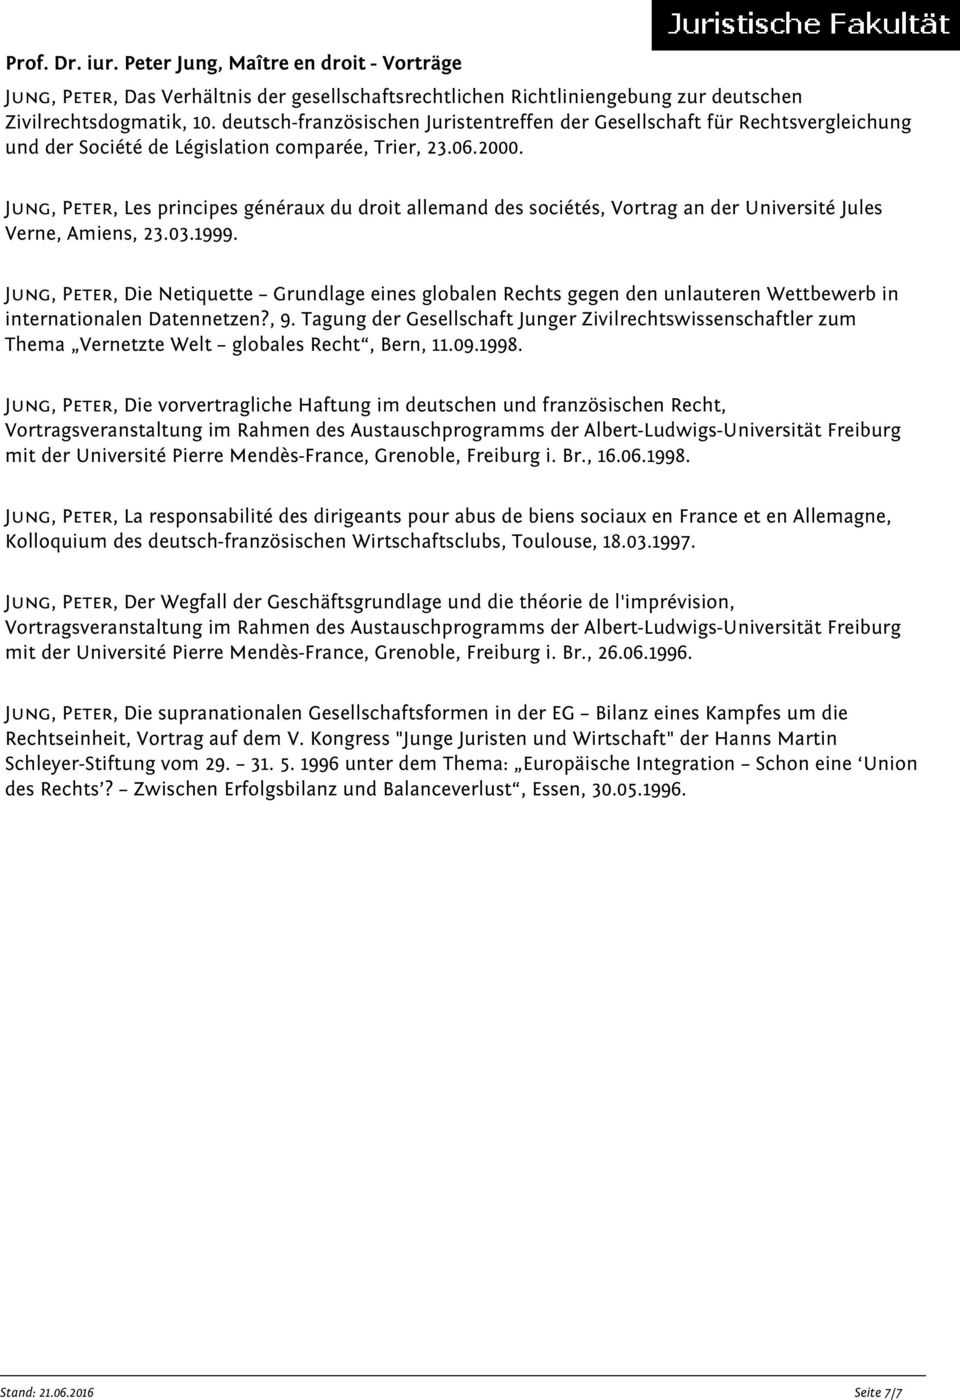 Jung, Peter, Les principes généraux du droit allemand des sociétés, Vortrag an der Université Jules Verne, Amiens, 23.03.1999.